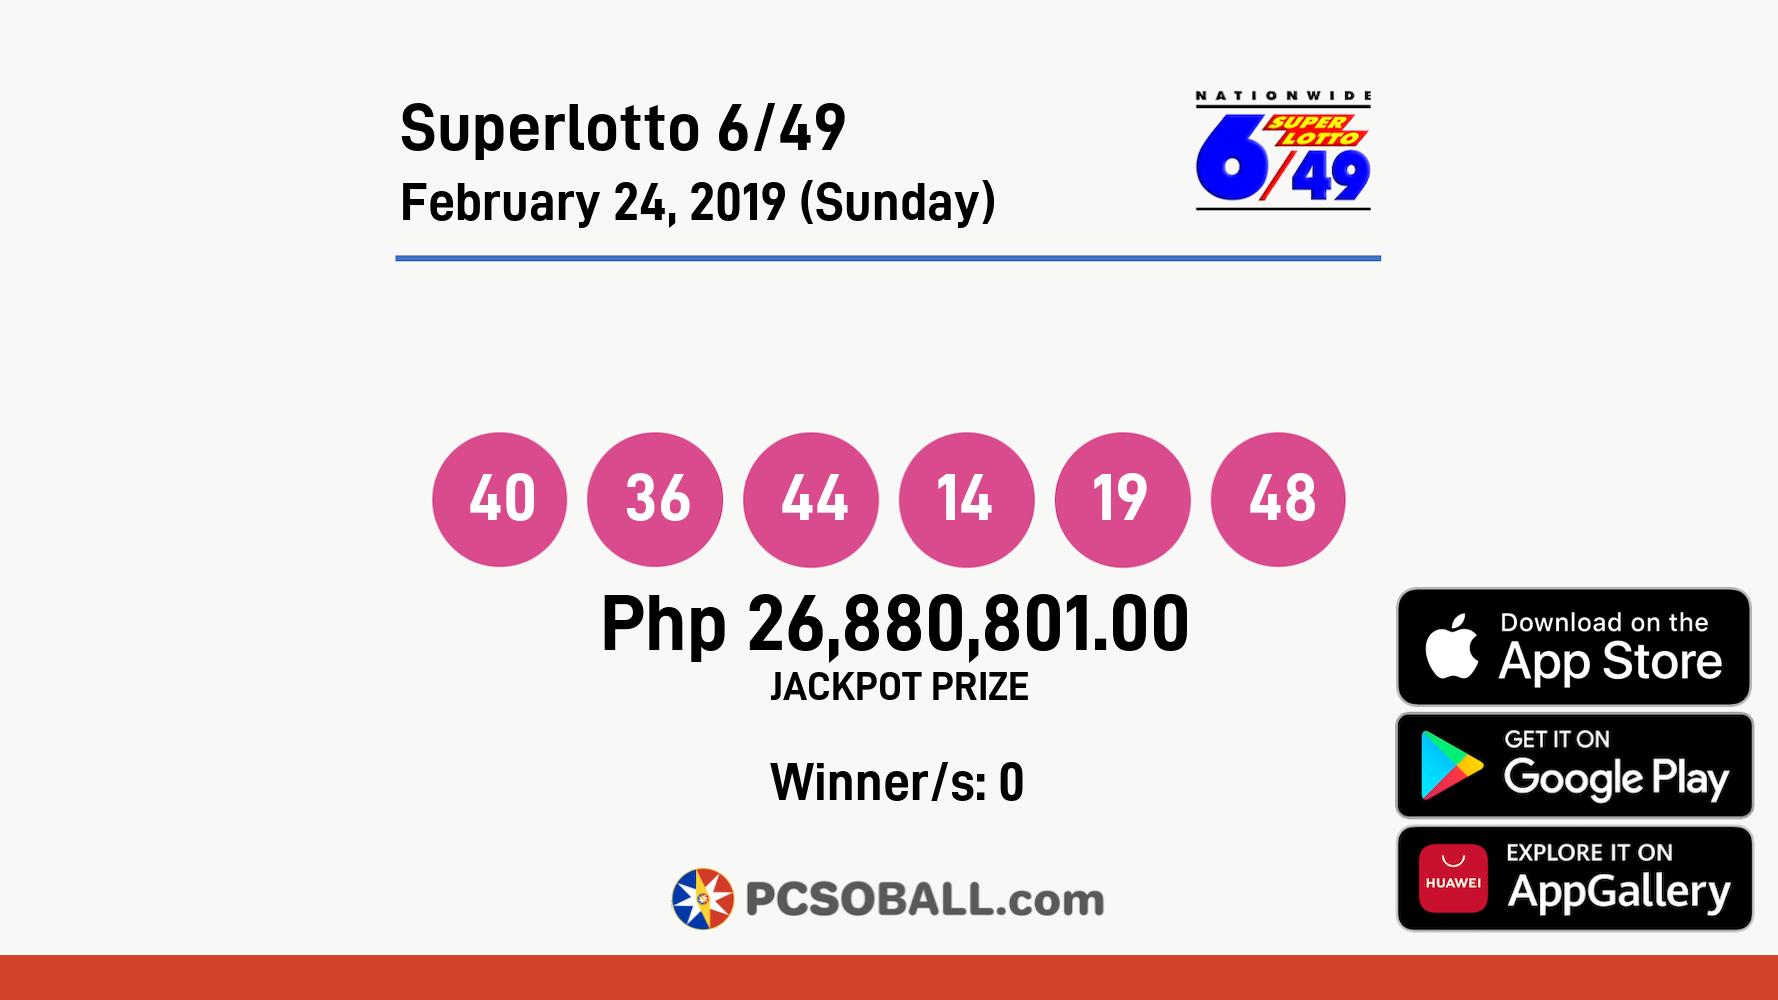 Superlotto 6/49 February 24, 2019 (Sunday) Result